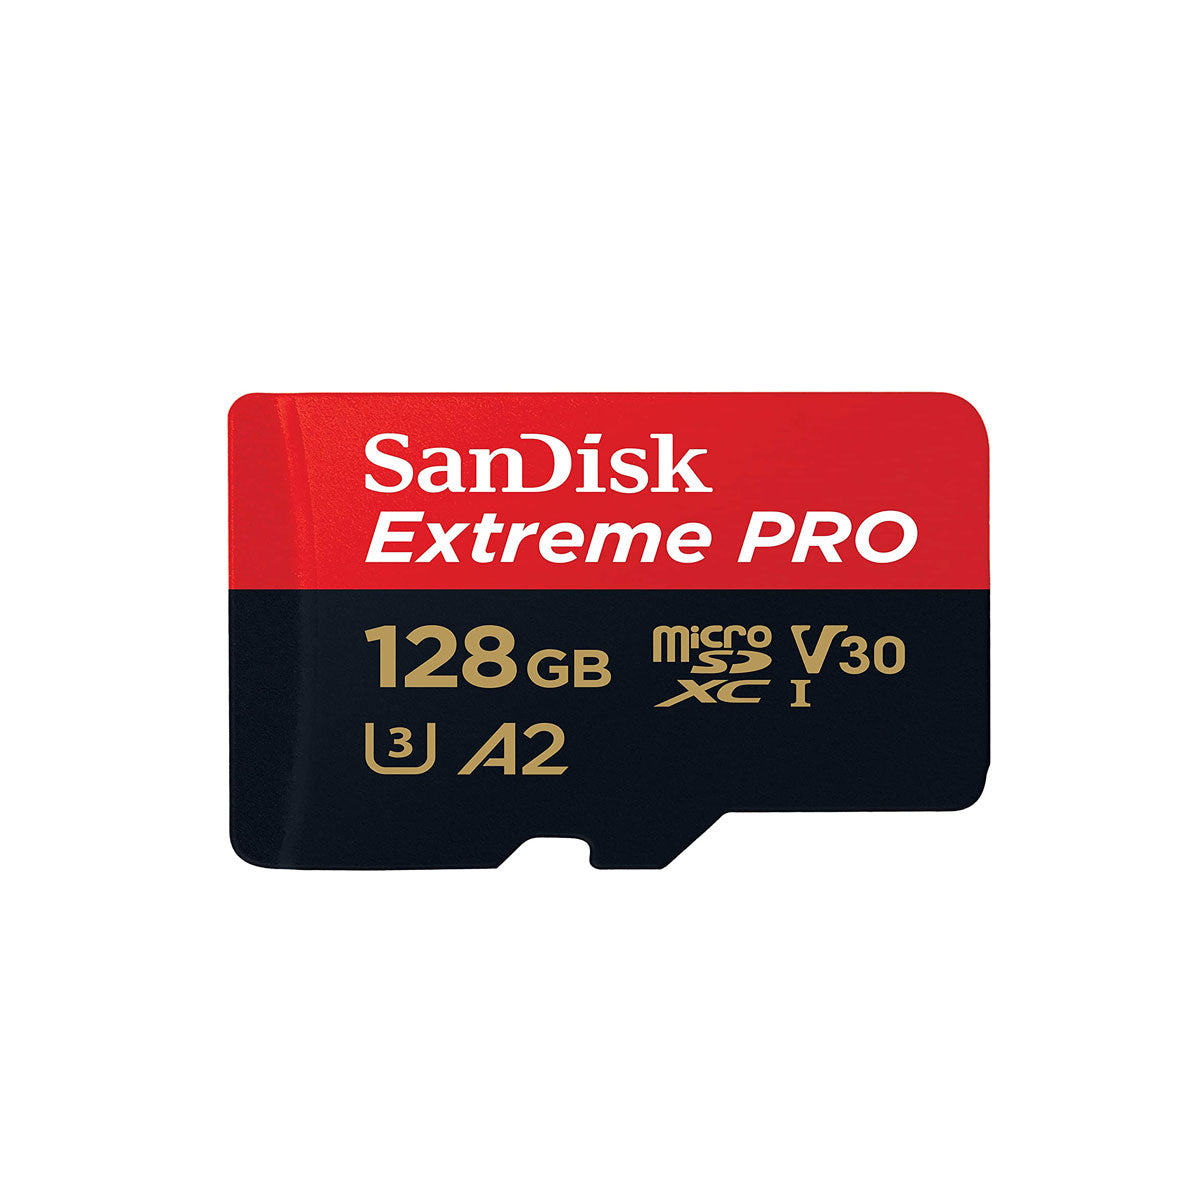 Sandisk MicroSDXC - I, V30 Card, 128GB, 170MB/s